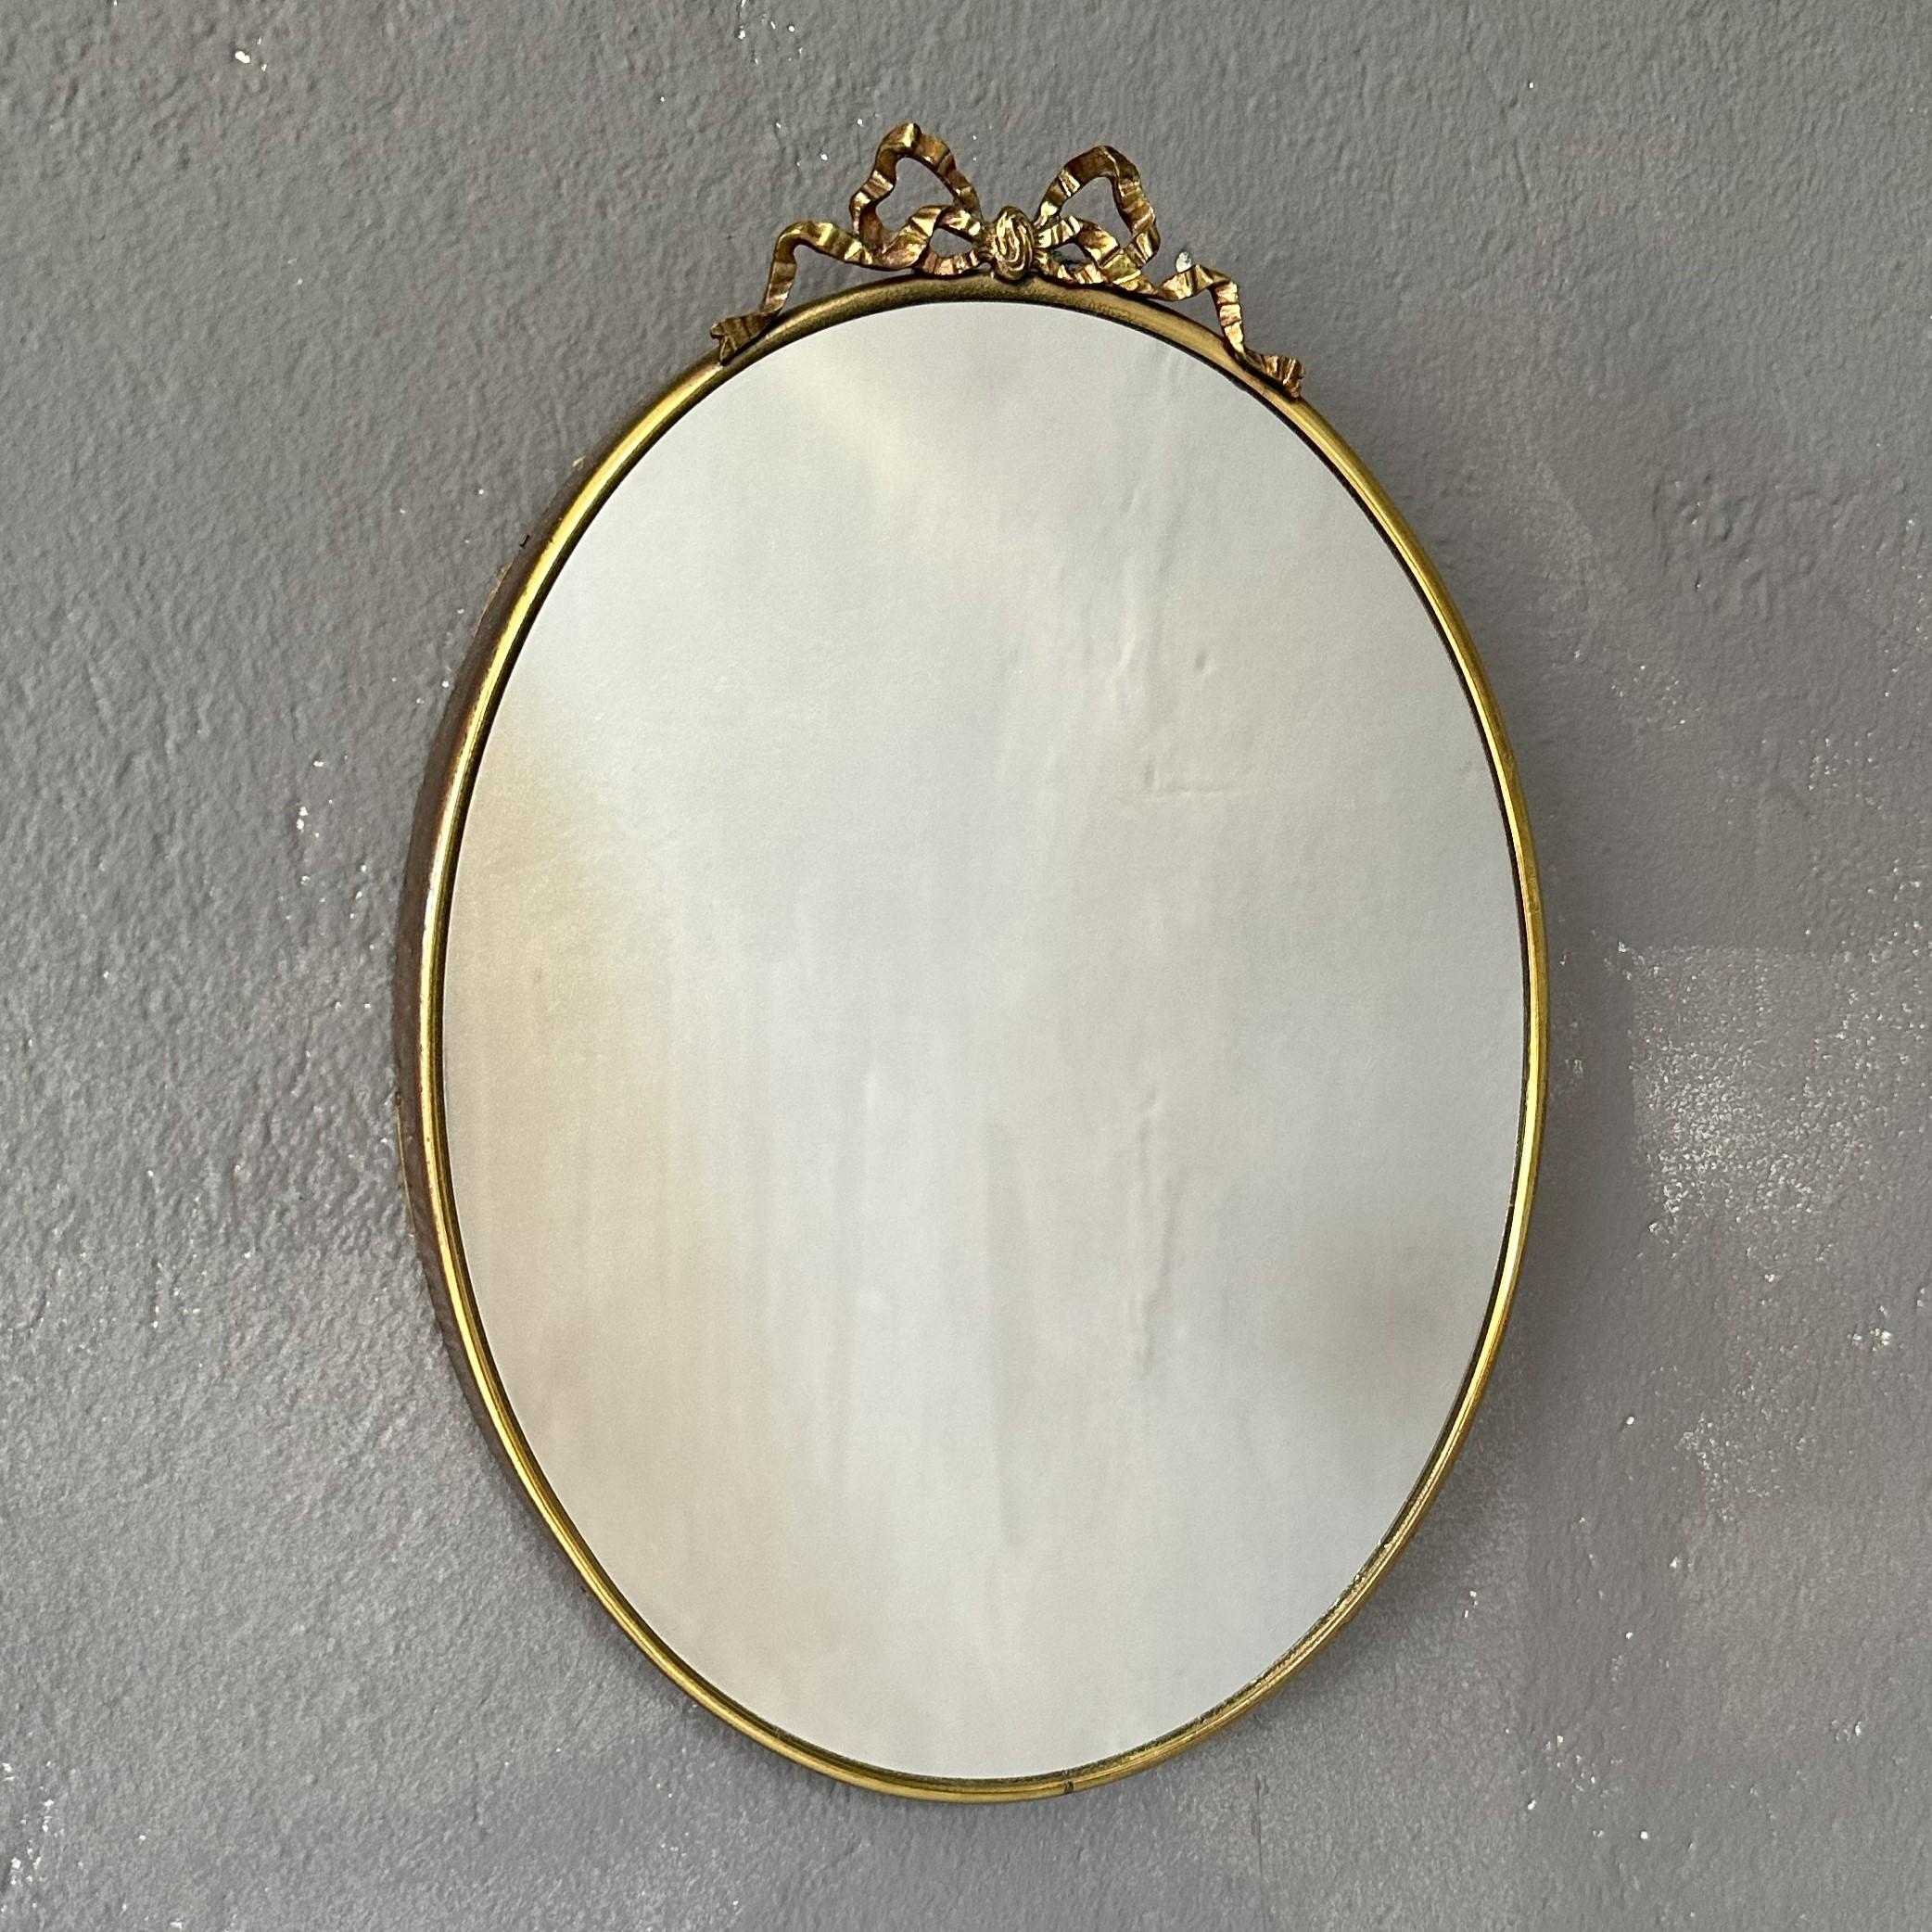 Miroir ovale des années 1950, de fabrication italienne, avec cadre en laiton.
Le miroir a une largeur maximale de 24 cm et une hauteur de 30 cm.
La partie supérieure du cadre est ornée d'une décoration en laiton (avec cette décoration, la hauteur